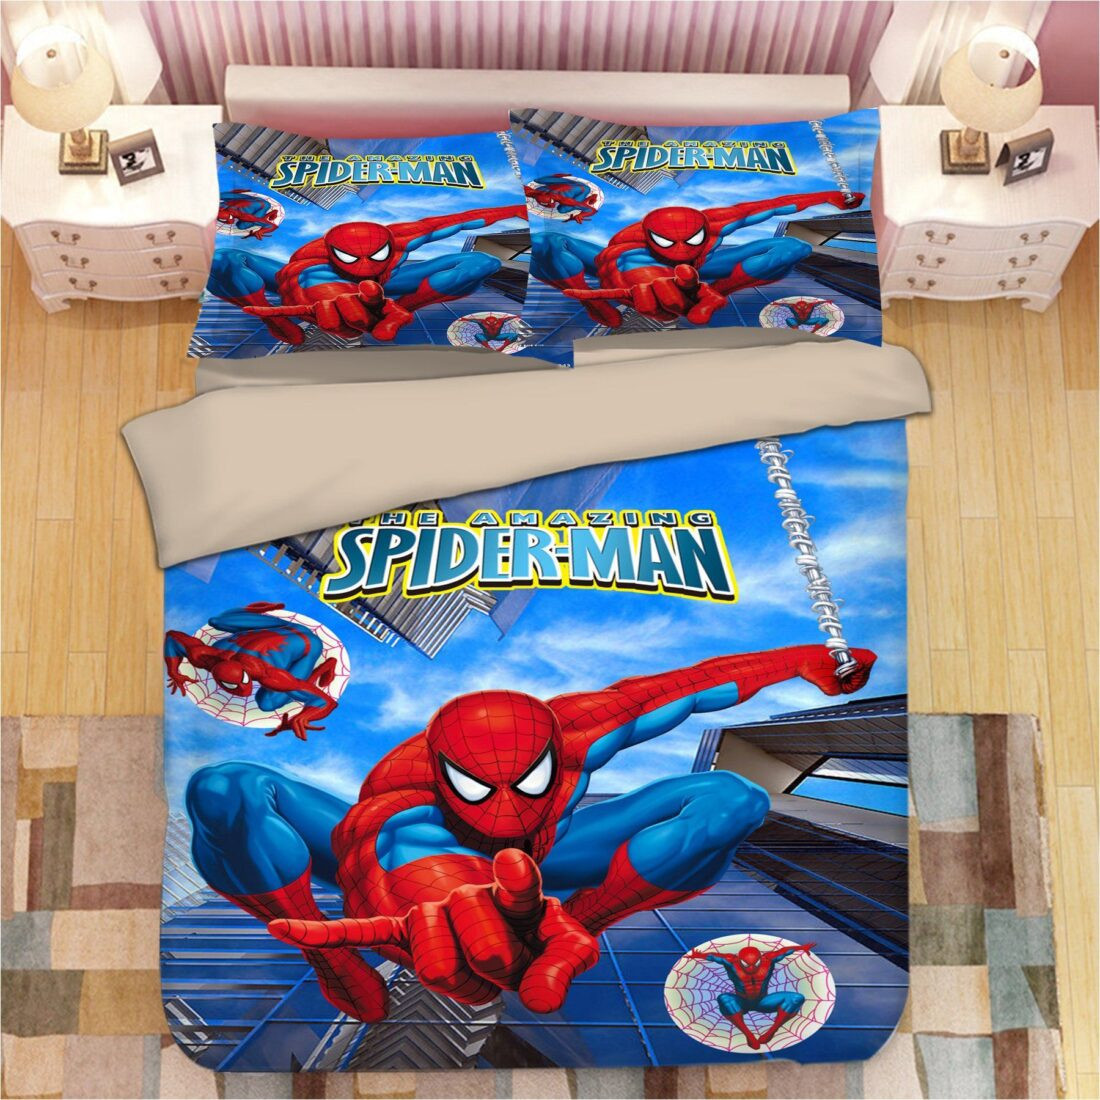 Avengers Spider Man 03 Duvet Cover Set - Bedding Set